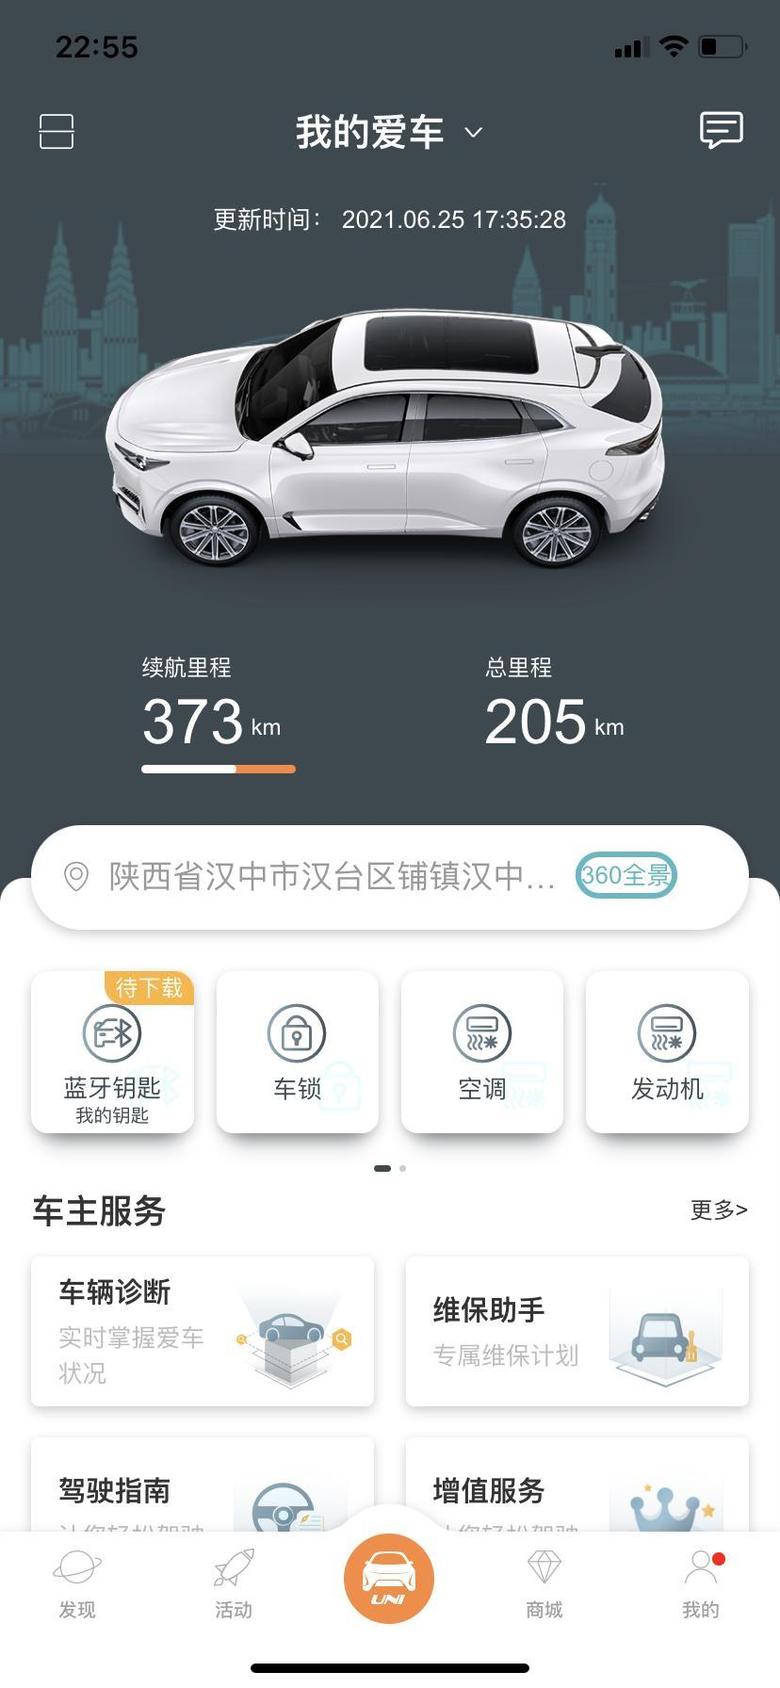 长安uni k-新车，还没提，表显示80公里，在这个App里面显示已经行驶205公里了，这是不是试驾车，你们是这样的吗？我现在都没敢去提车！